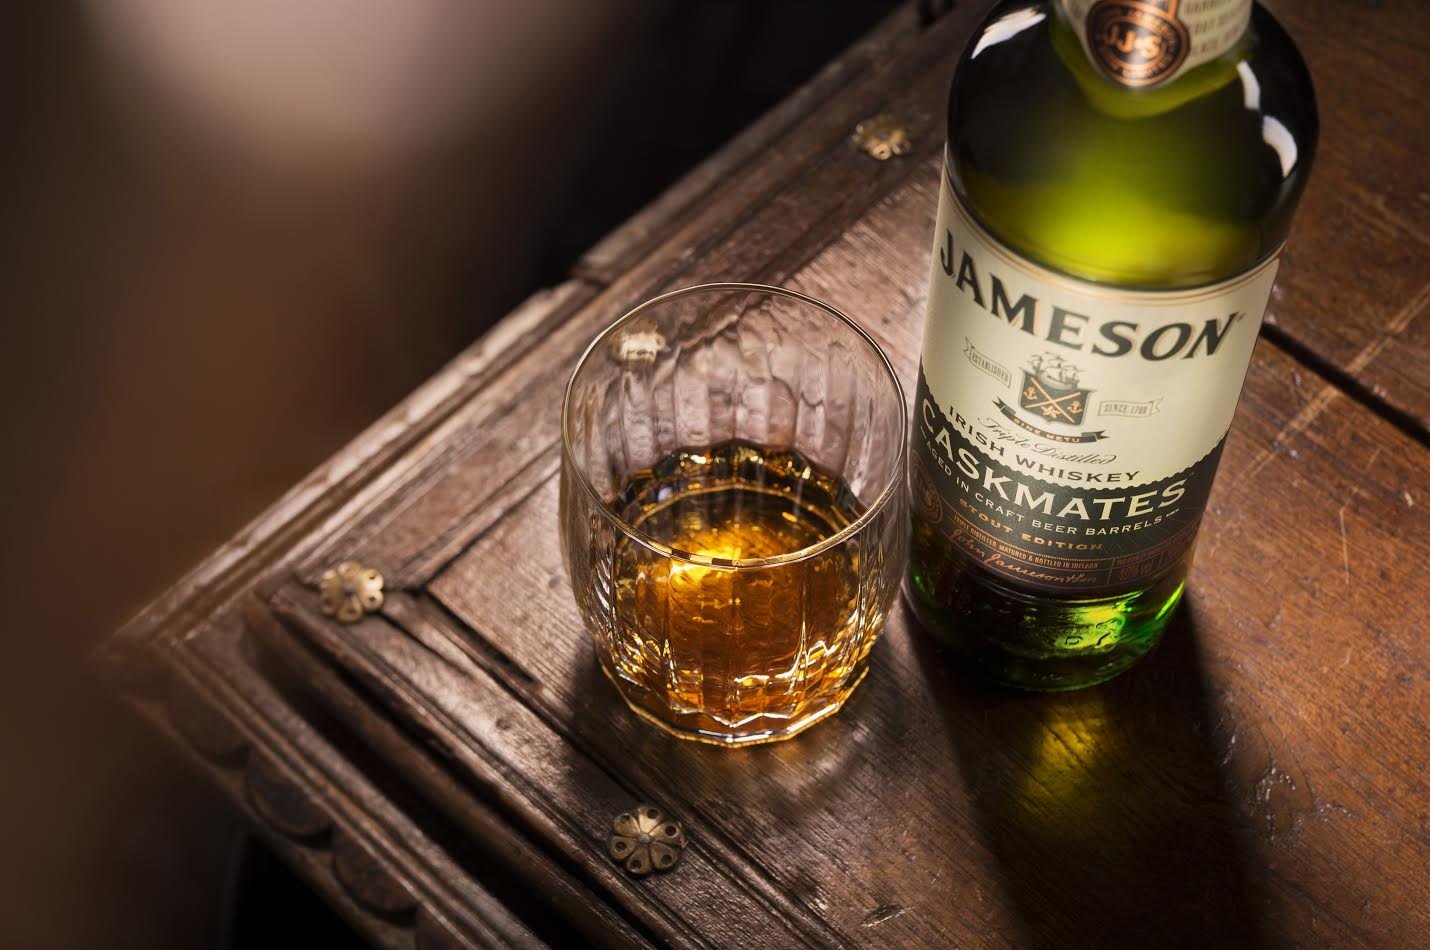 Το αγαπημένο Jameson Irish Whiskey, παλαιωμένο σε βαρέλια μαύρης μπύρας!